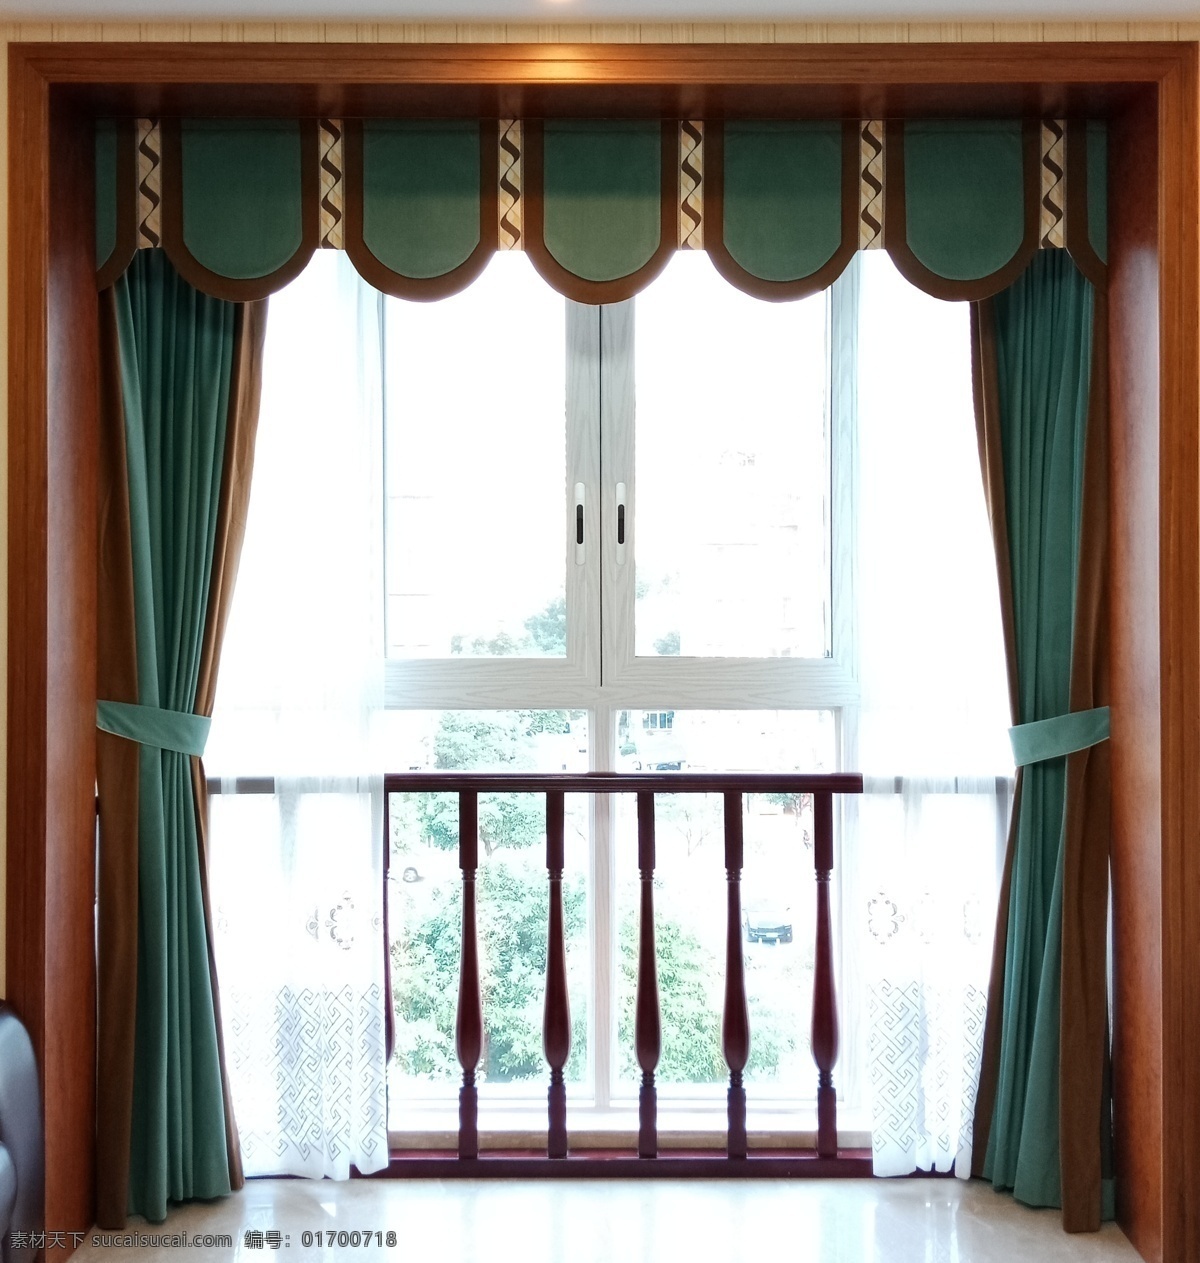 飘窗窗帘 窗帘 平幔 家装 效果图 飘窗 自然景观 建筑园林